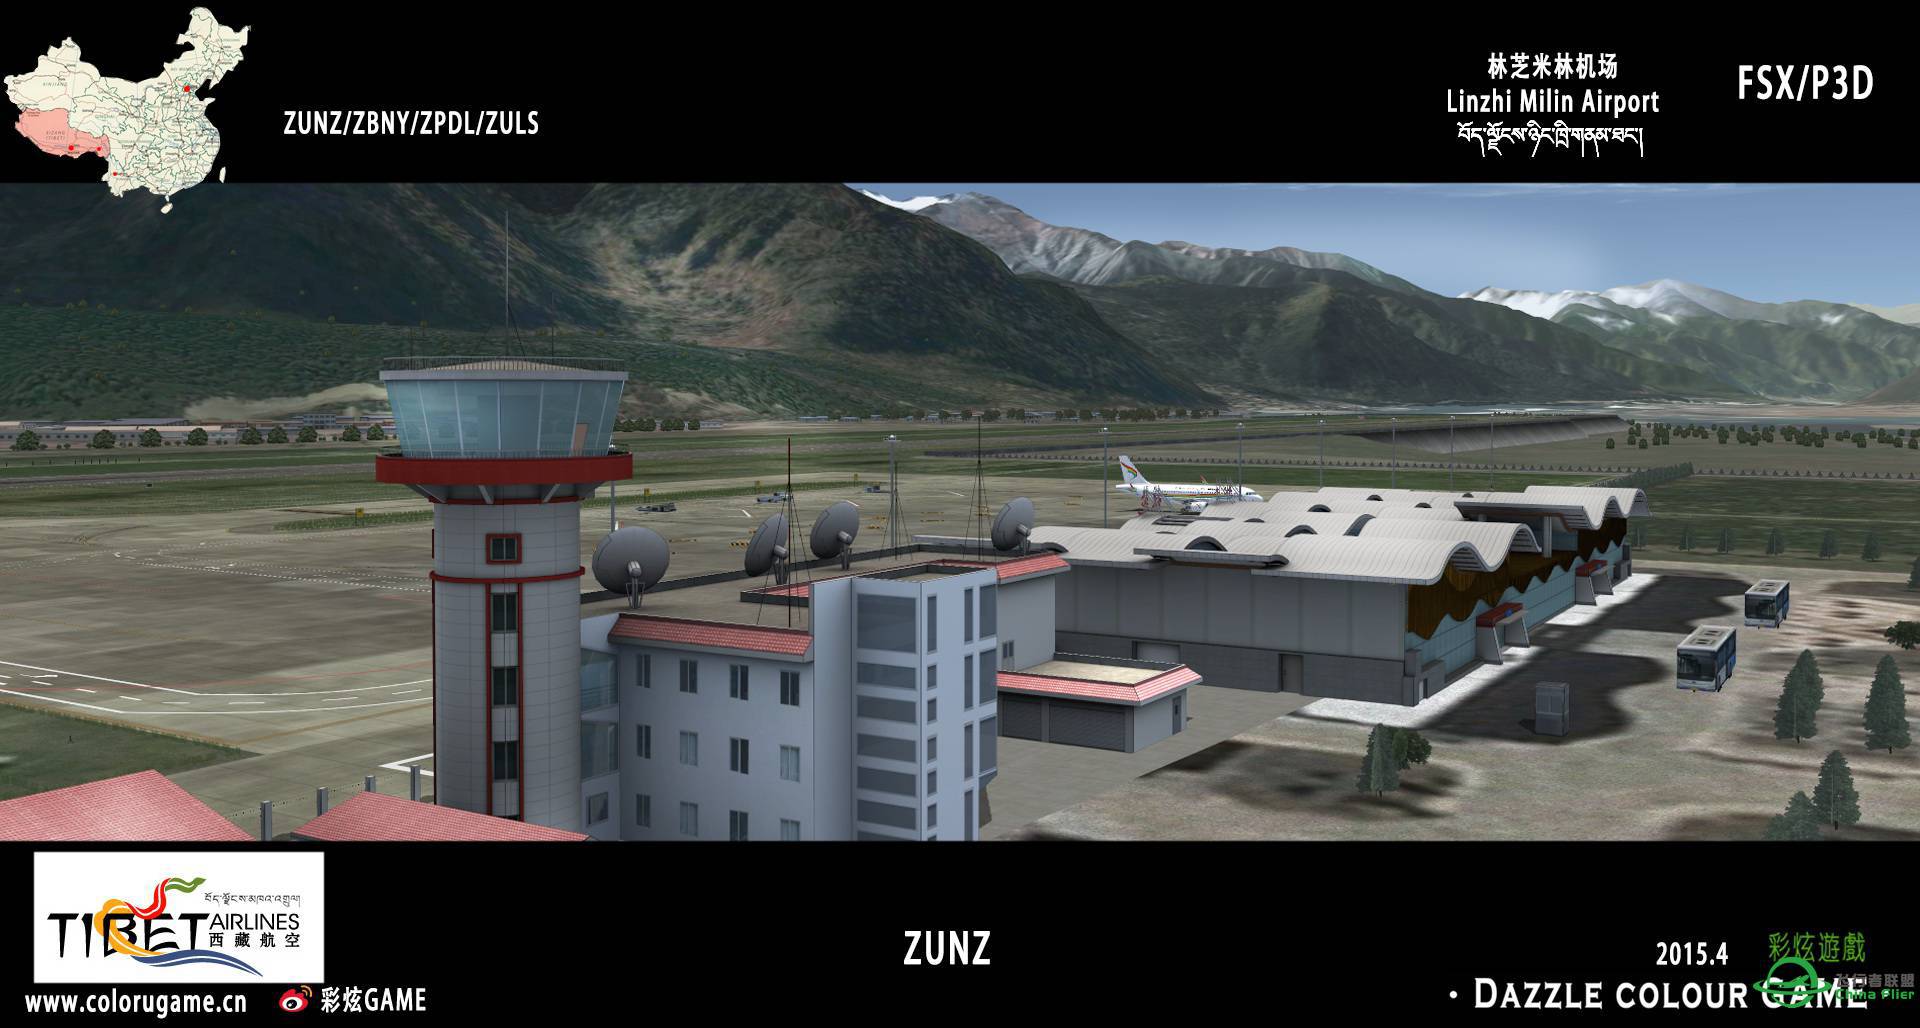 彩炫地景：林芝米林机场（ZUNZ）正式发布！-2545 